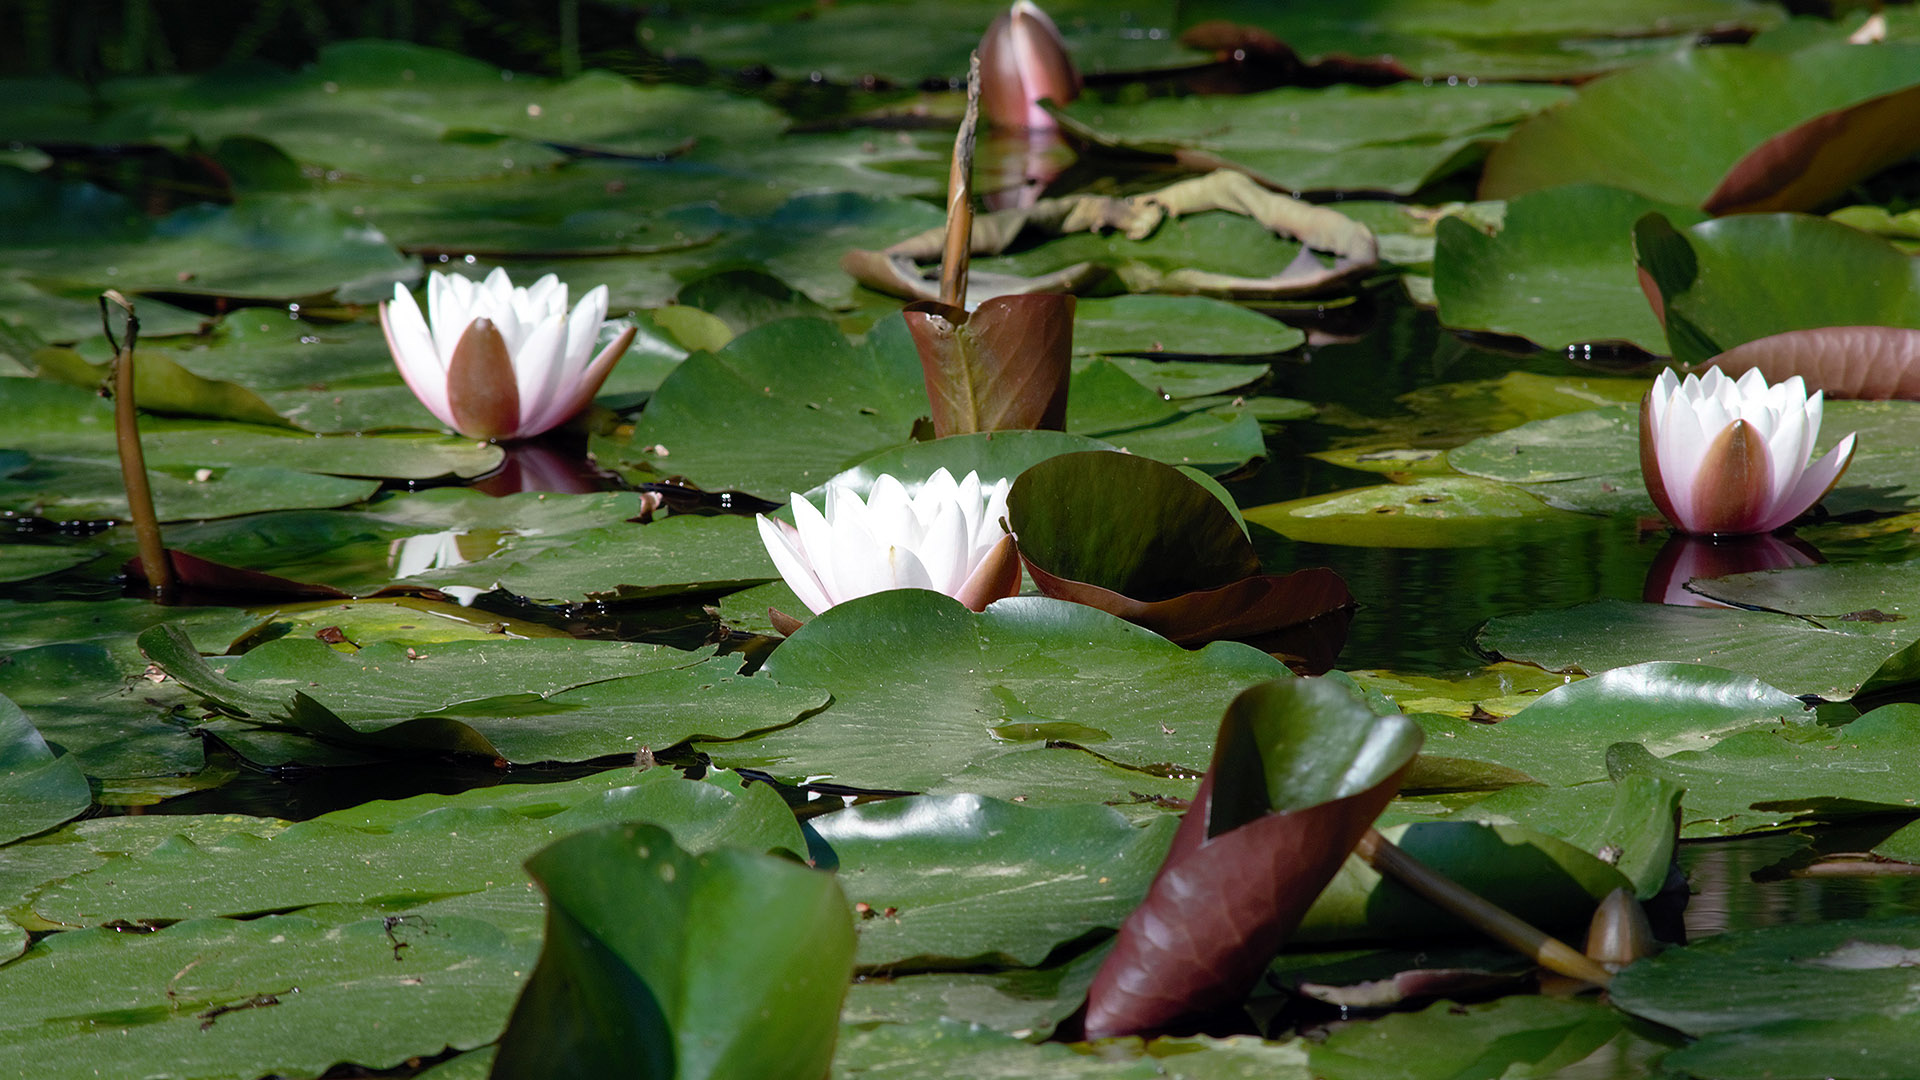 nimìnfee in fiore sullo specchio d'acqua del laghetto dell'orto botanico di lucca